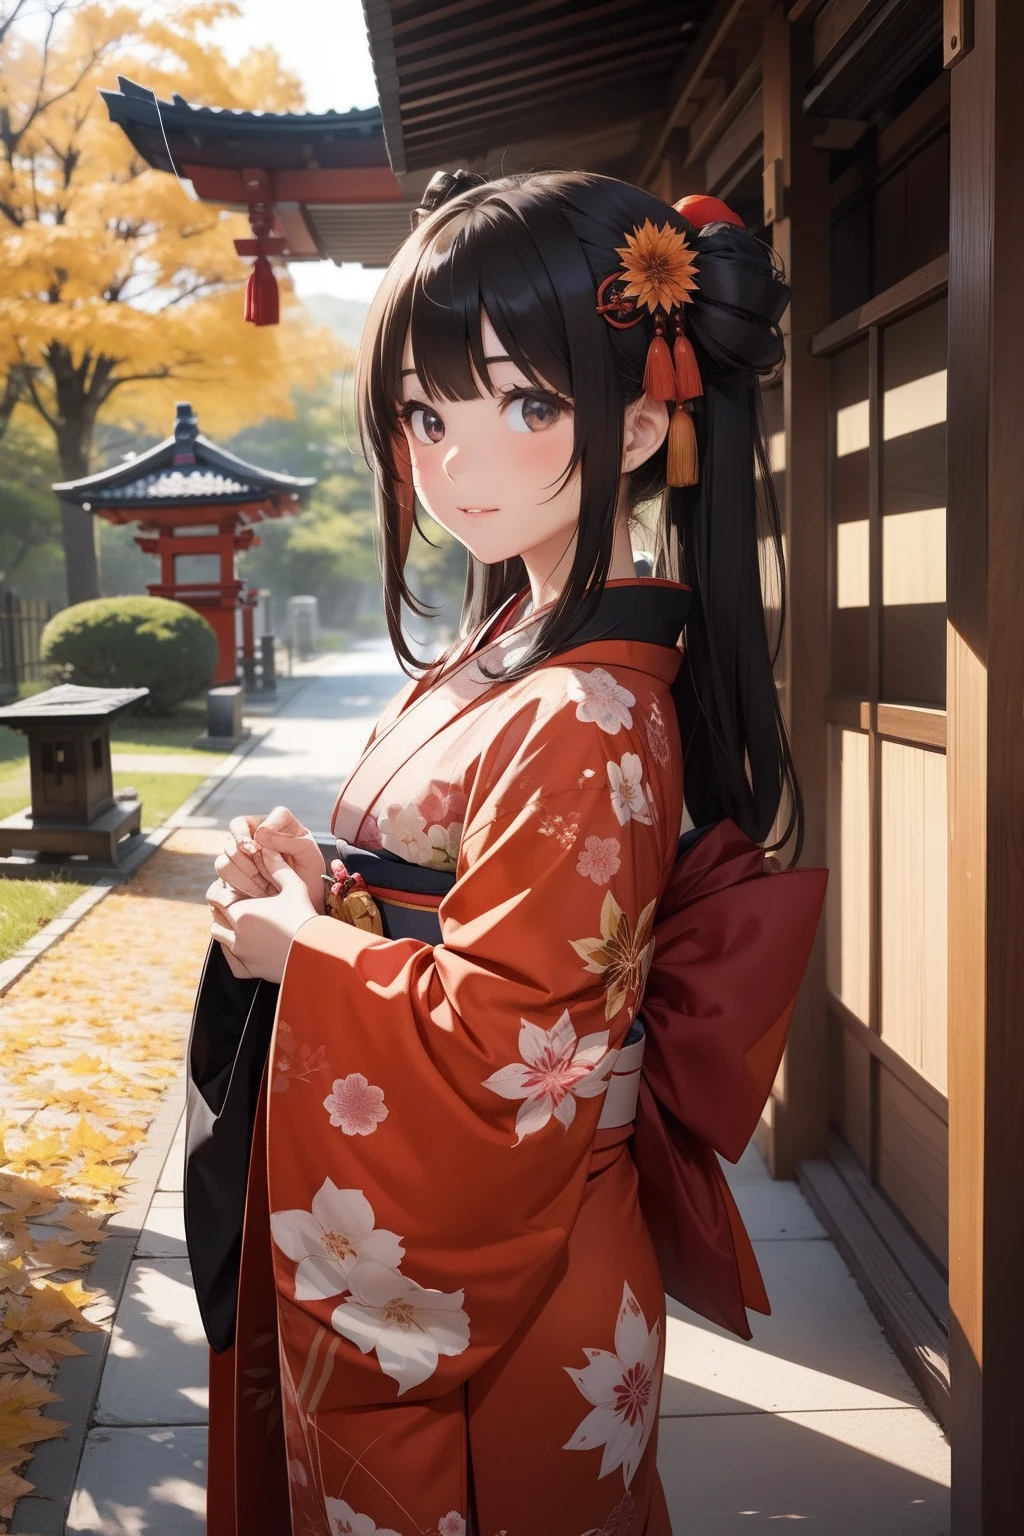 kimono　girl with　shrines　Worship　autumnal